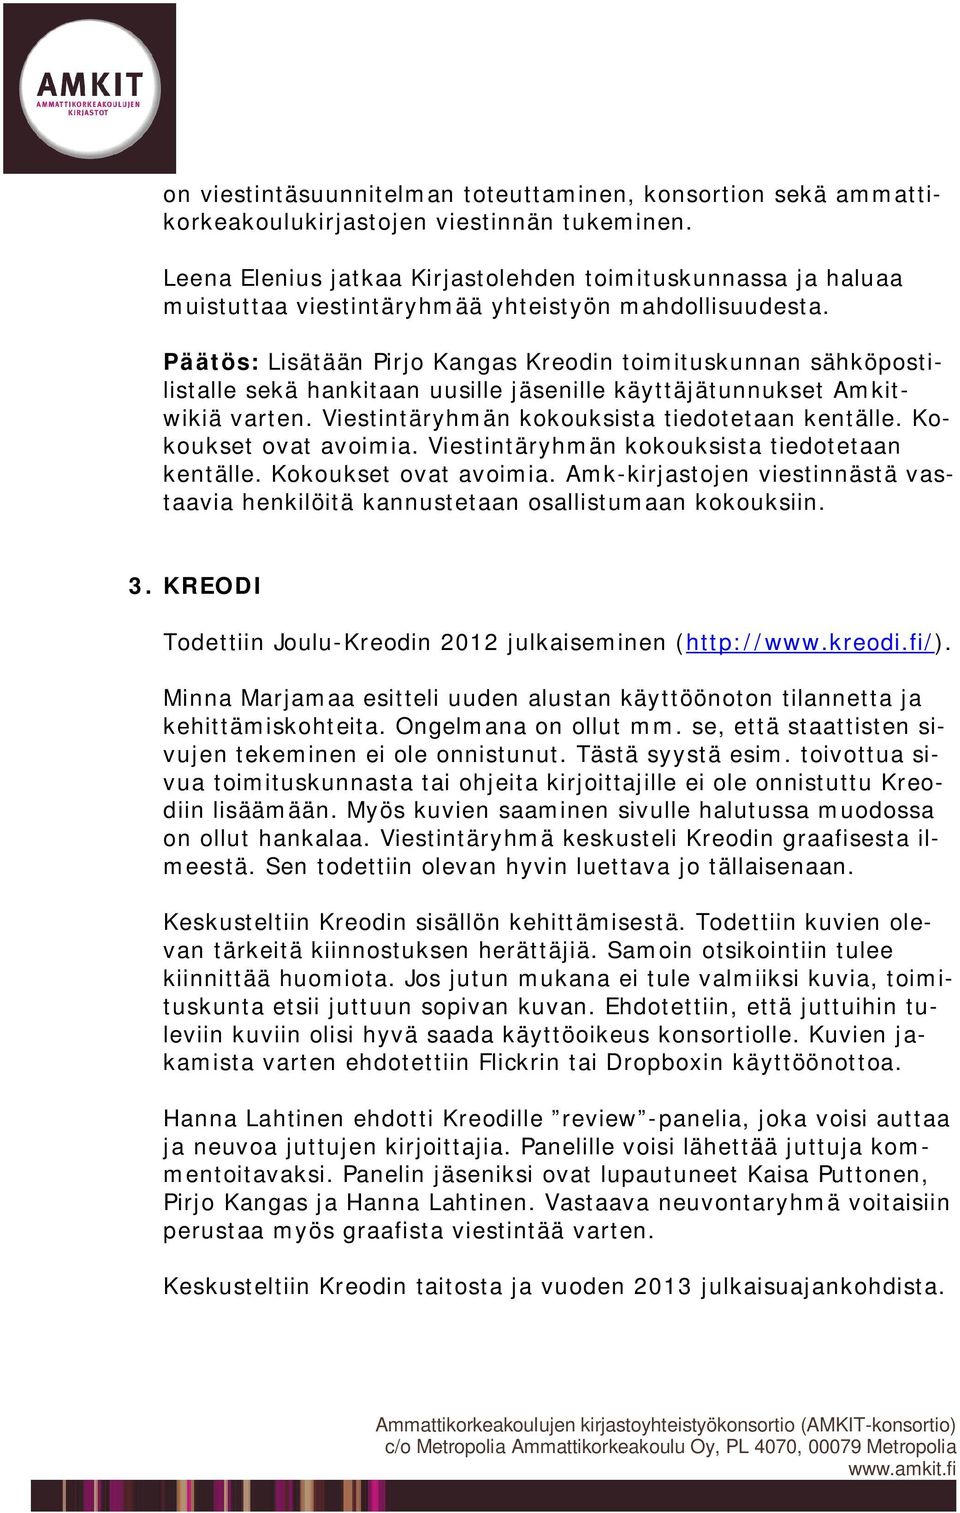 Päätös: Lisätään Pirjo Kangas Kreodin toimituskunnan sähköpostilistalle sekä hankitaan uusille jäsenille käyttäjätunnukset Amkitwikiä varten. Viestintäryhmän kokouksista tiedotetaan kentälle.